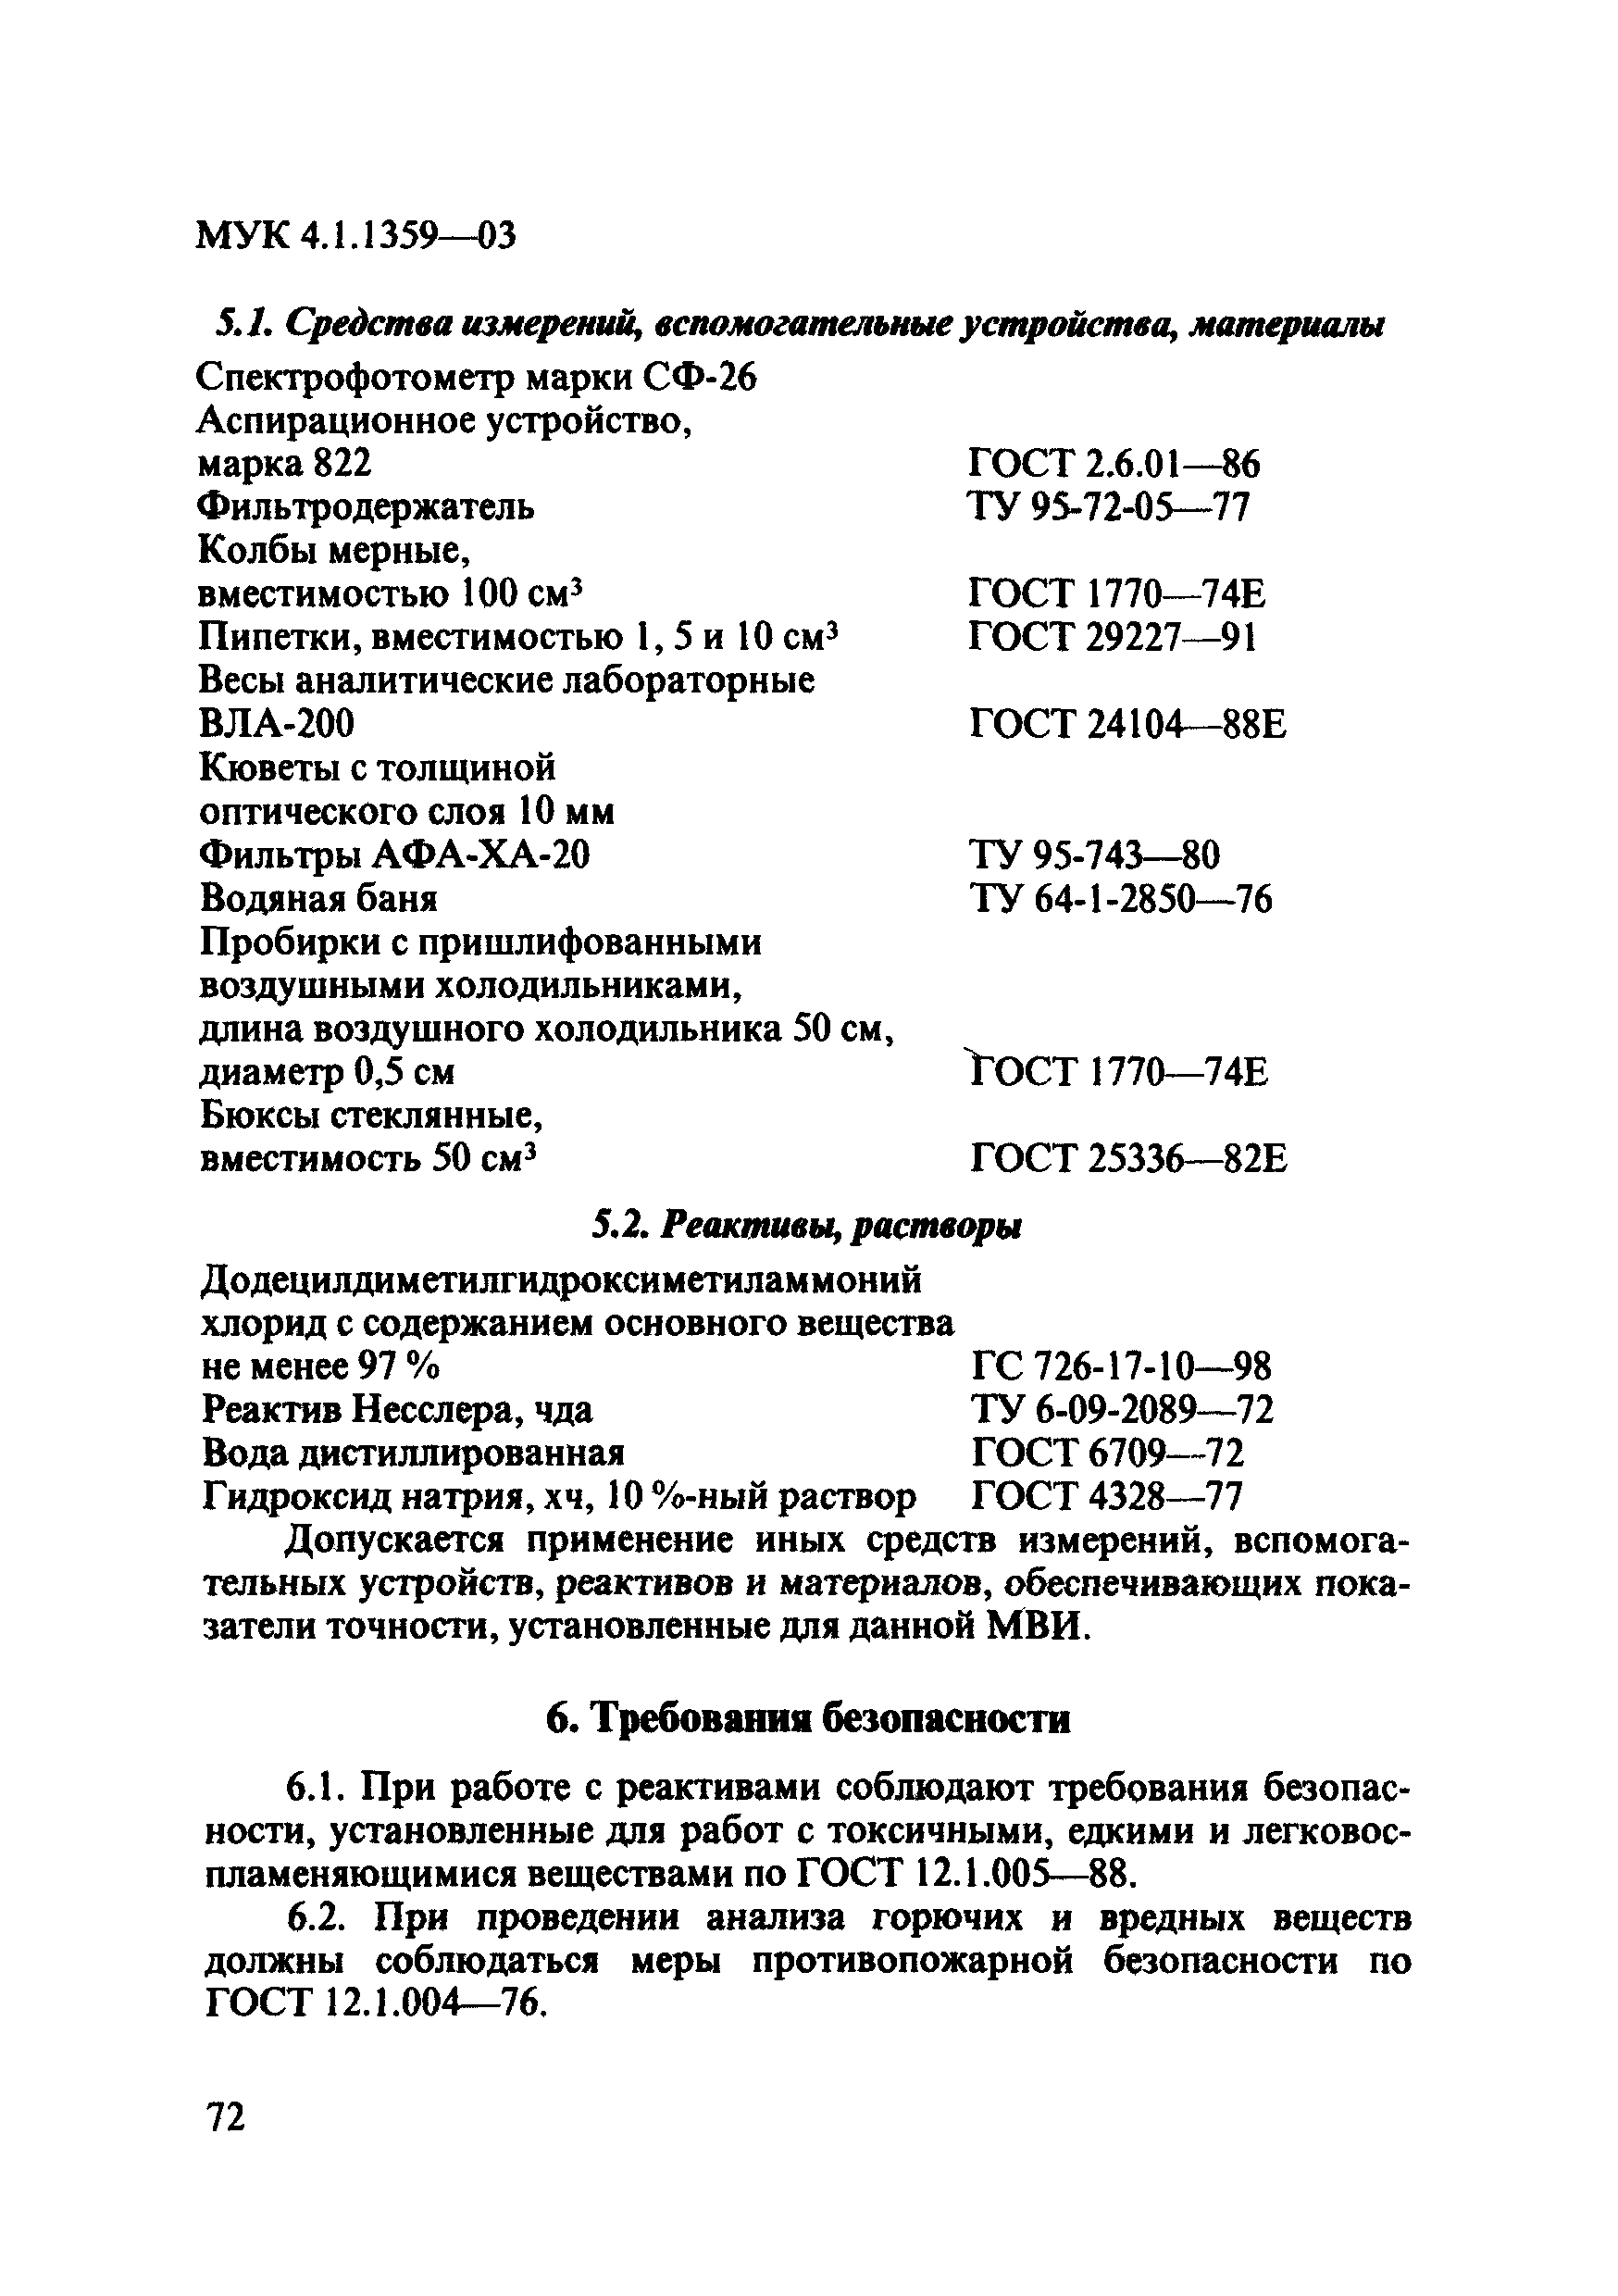 МУК 4.1.1359-03